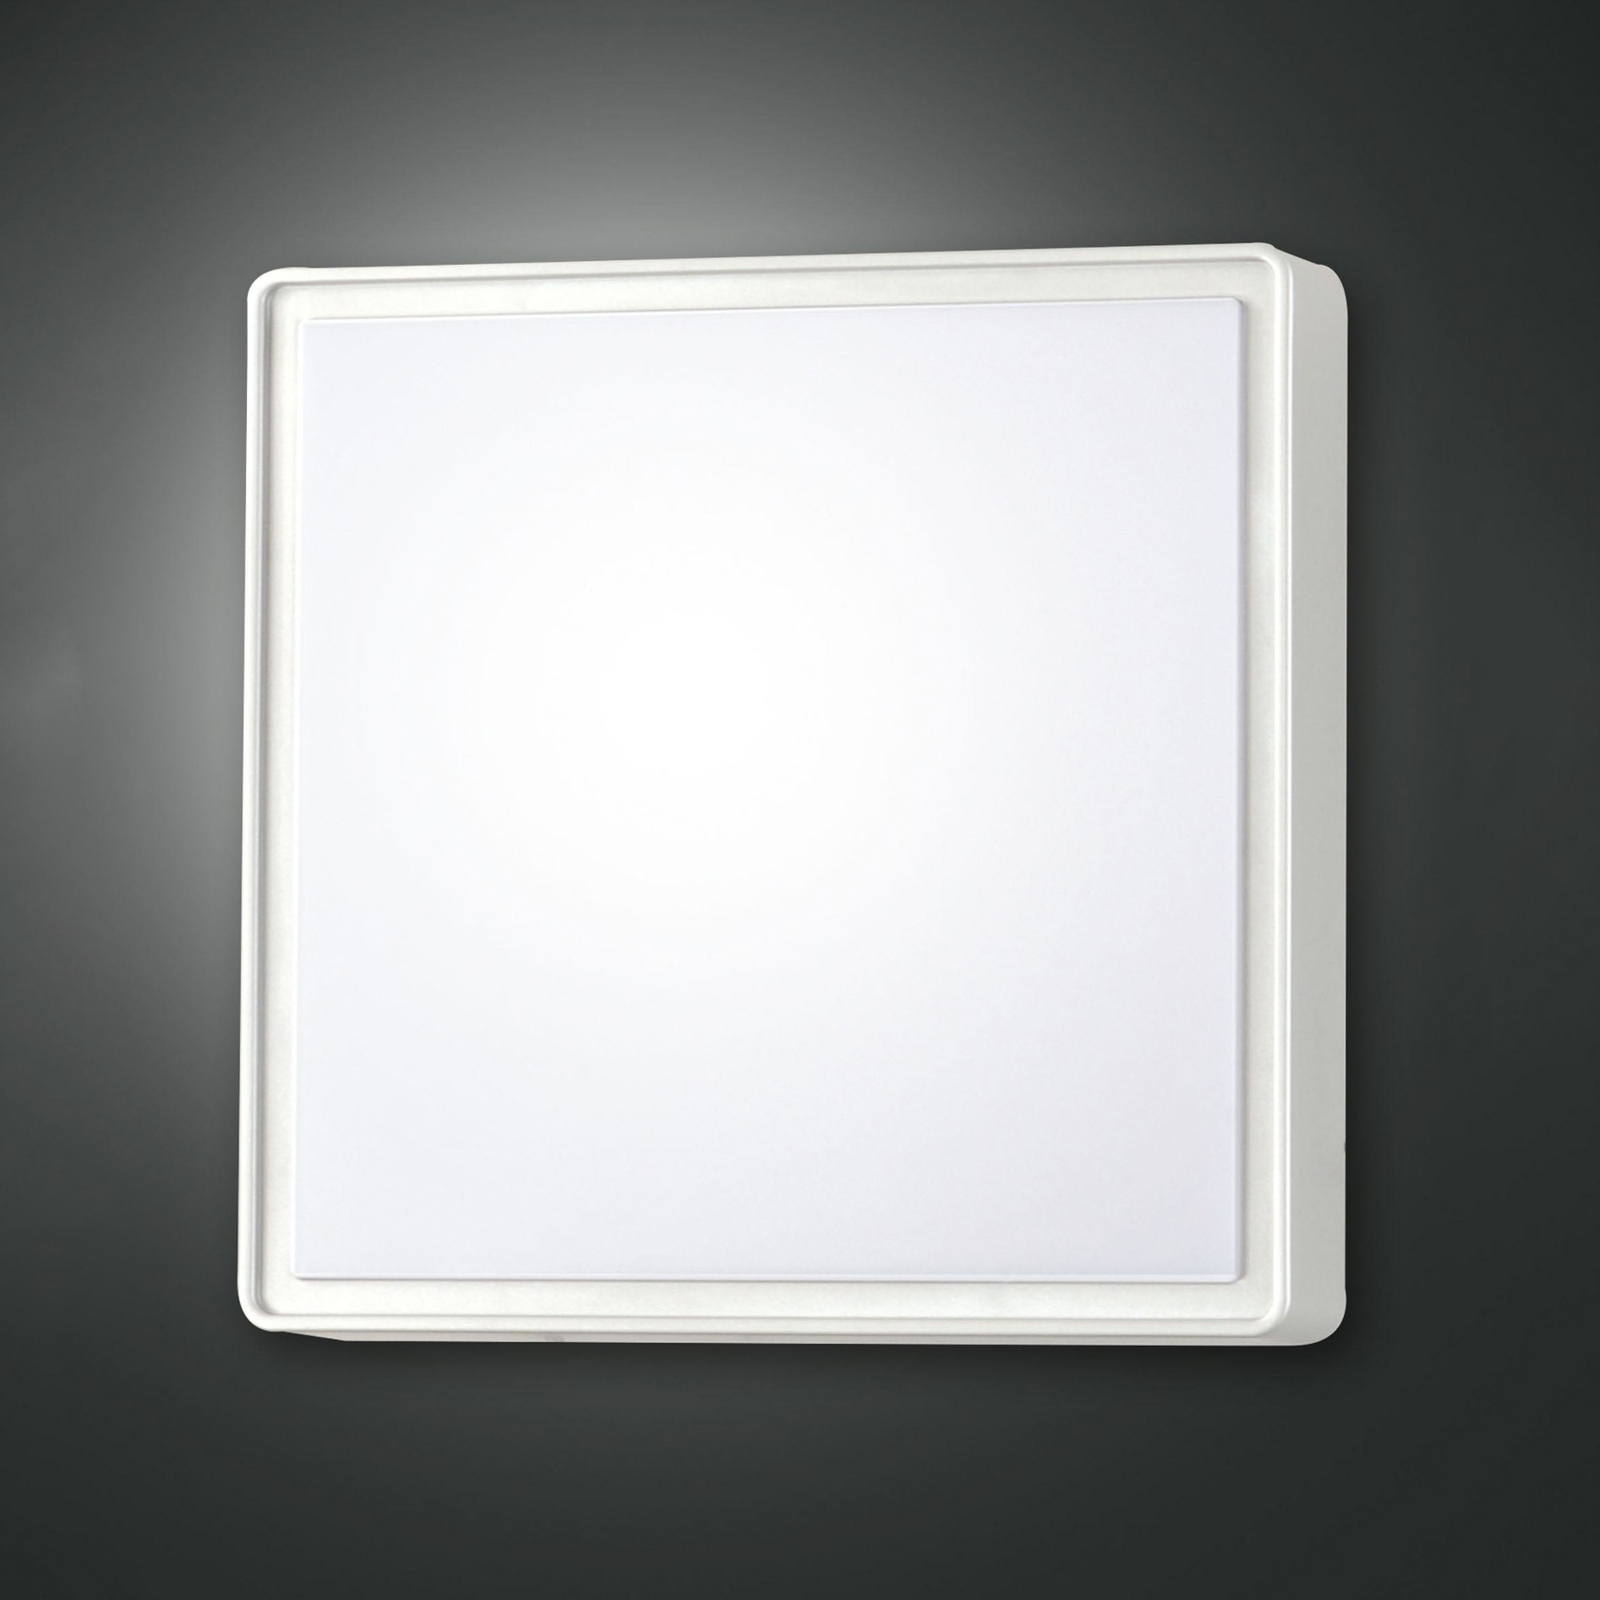 Φωτιστικό τοίχου Oban LED, 30 cm x 30 cm, λευκό, IP65